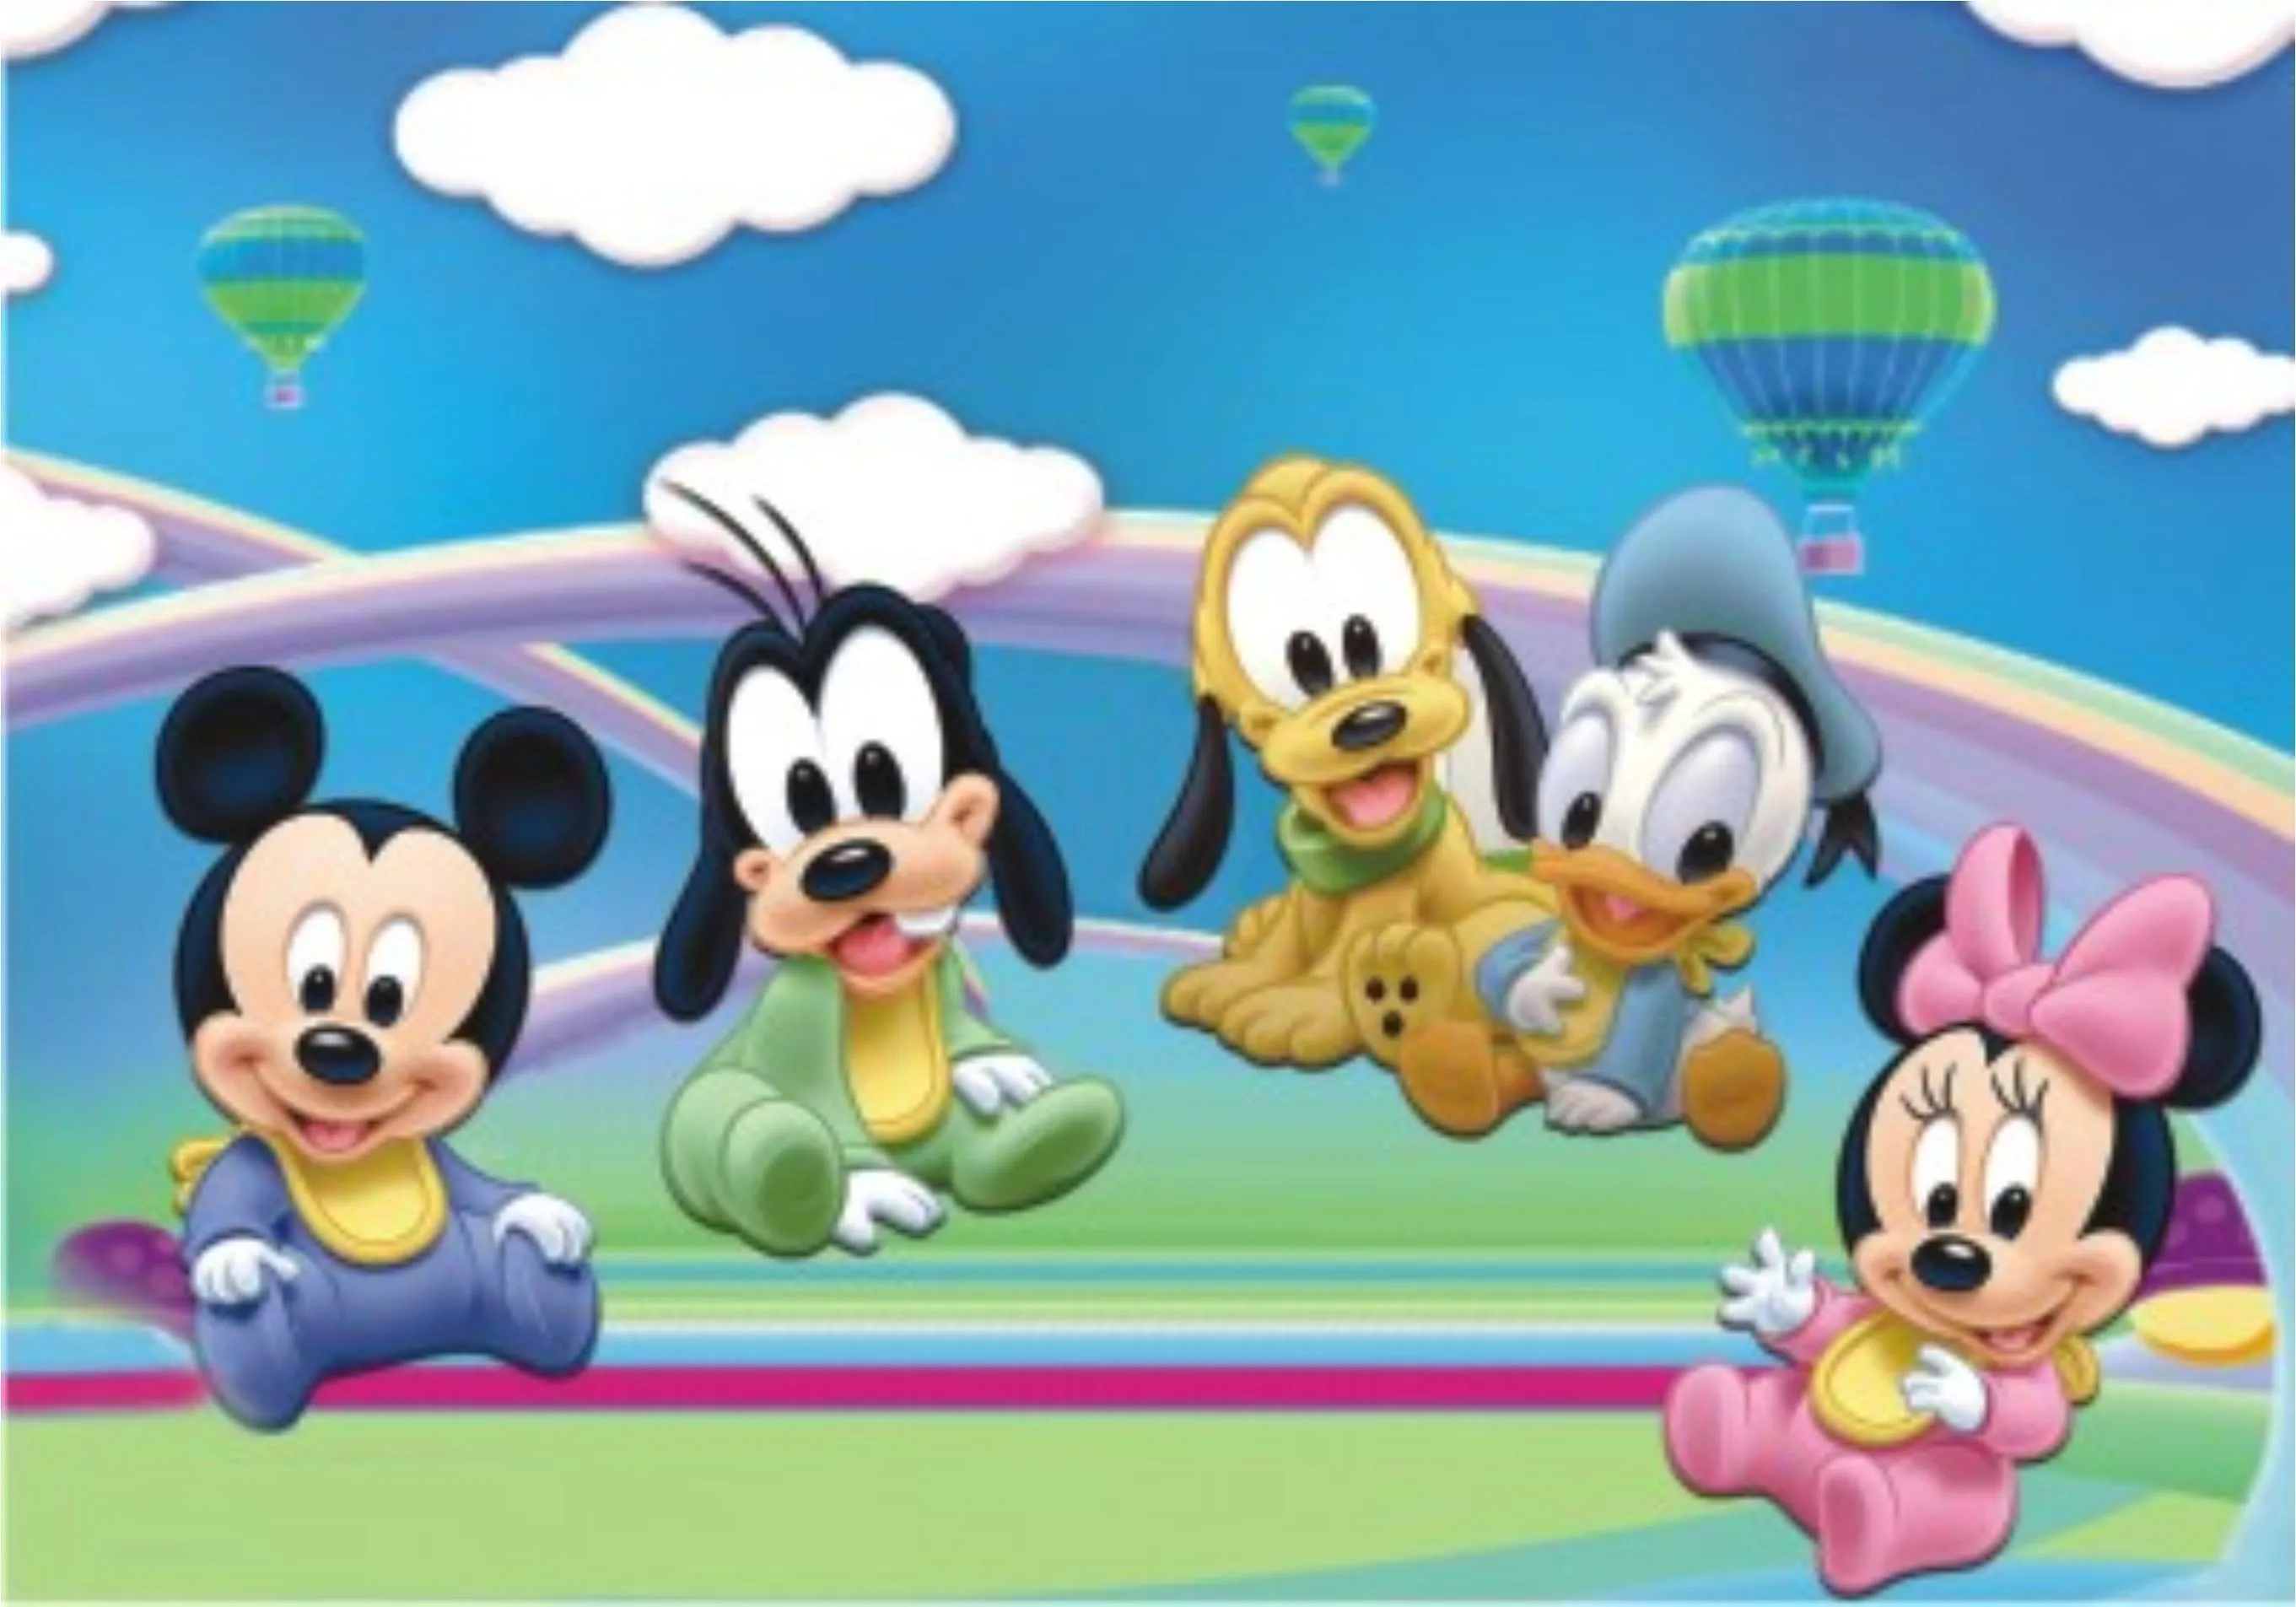 Disney Baby Codigo 131 Painel Adesivo Decoracao De Bebe Pictures